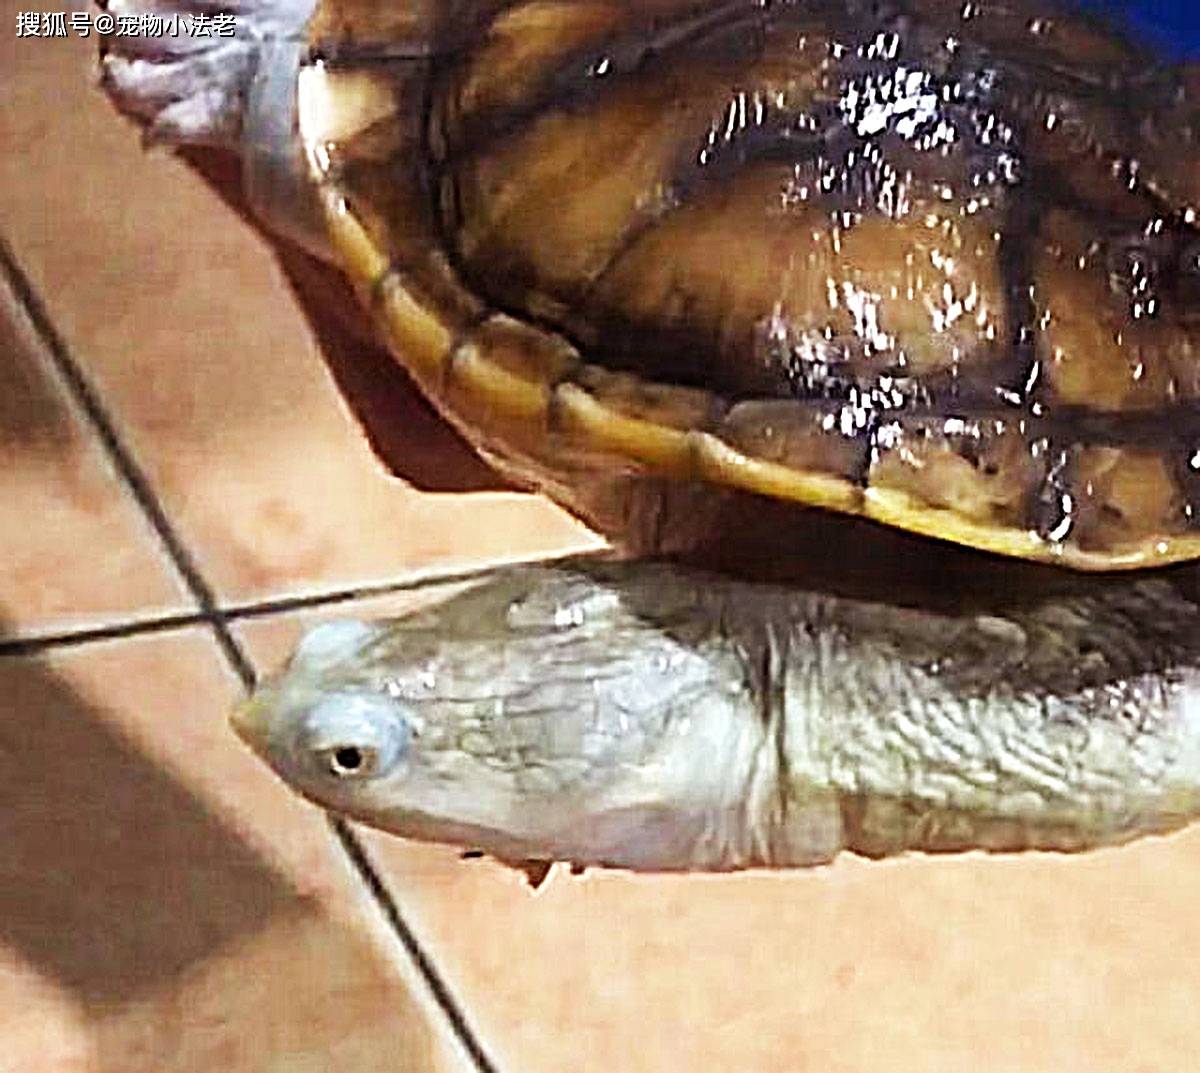 原创这种稀有的乌龟,你见过吗?它长着2个脑袋,被人称为双头龟